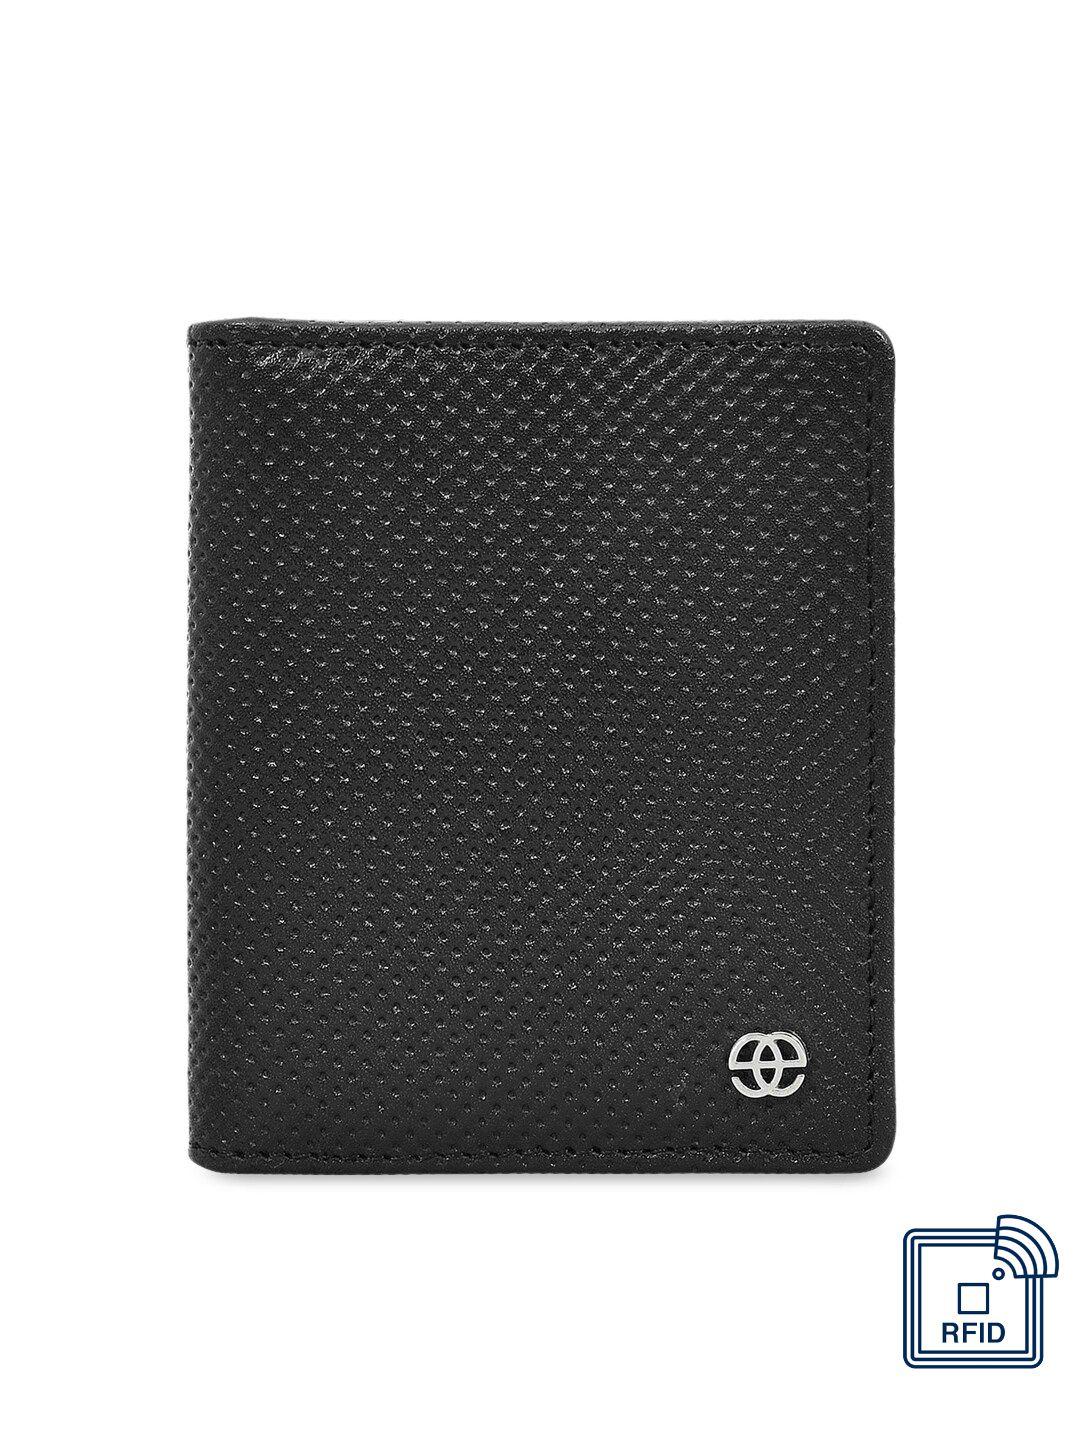 eske unisex black geometric textured leather card holder